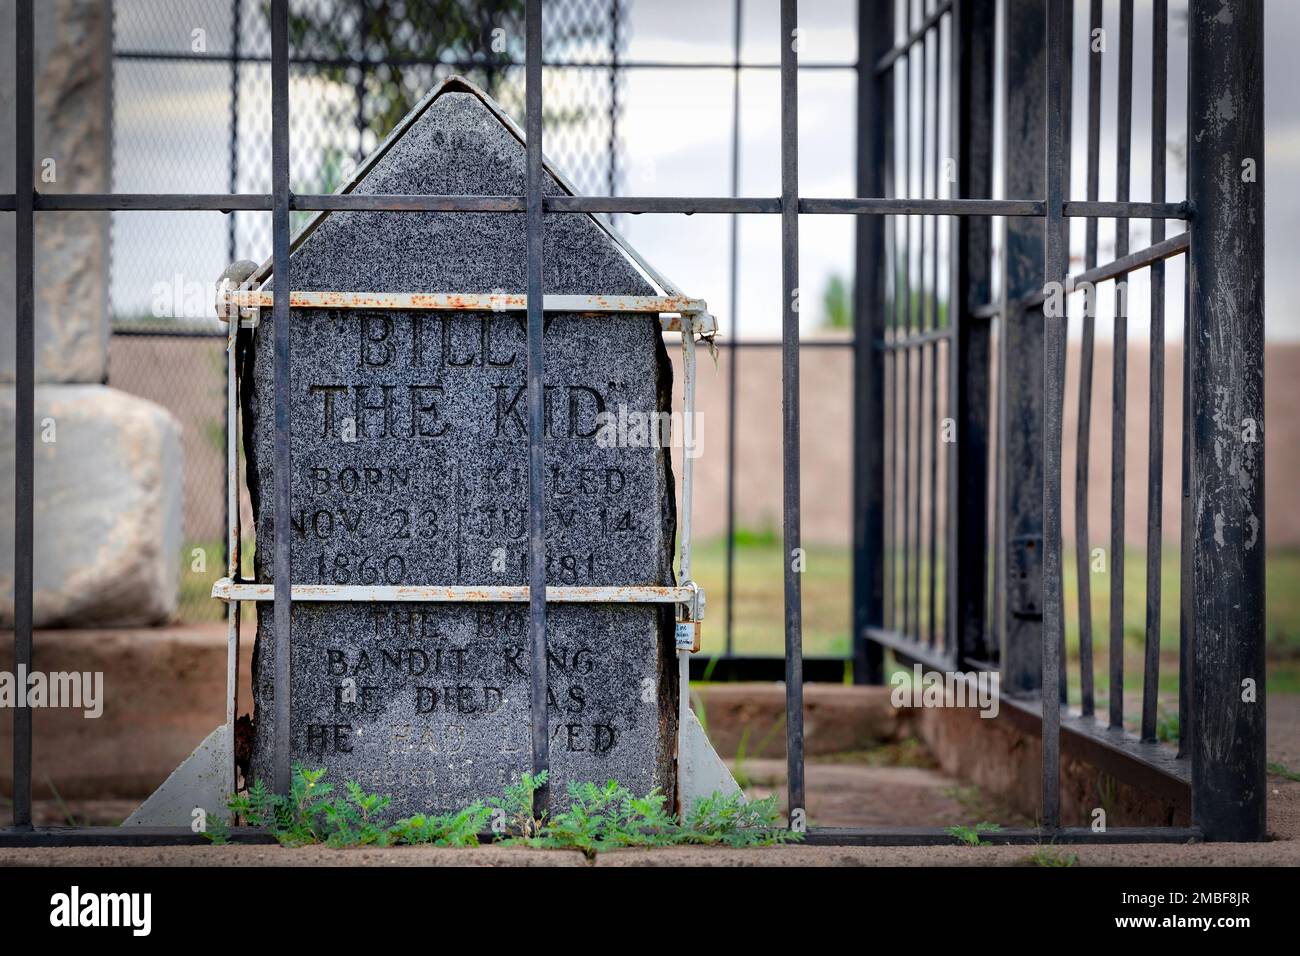 La pierre tombale de Henry McCarty, alias William H. Bonney, et Billy the Kid au cimetière de l'ancien fort Sumner à fort Sumner, Nouveau-Mexique. Banque D'Images